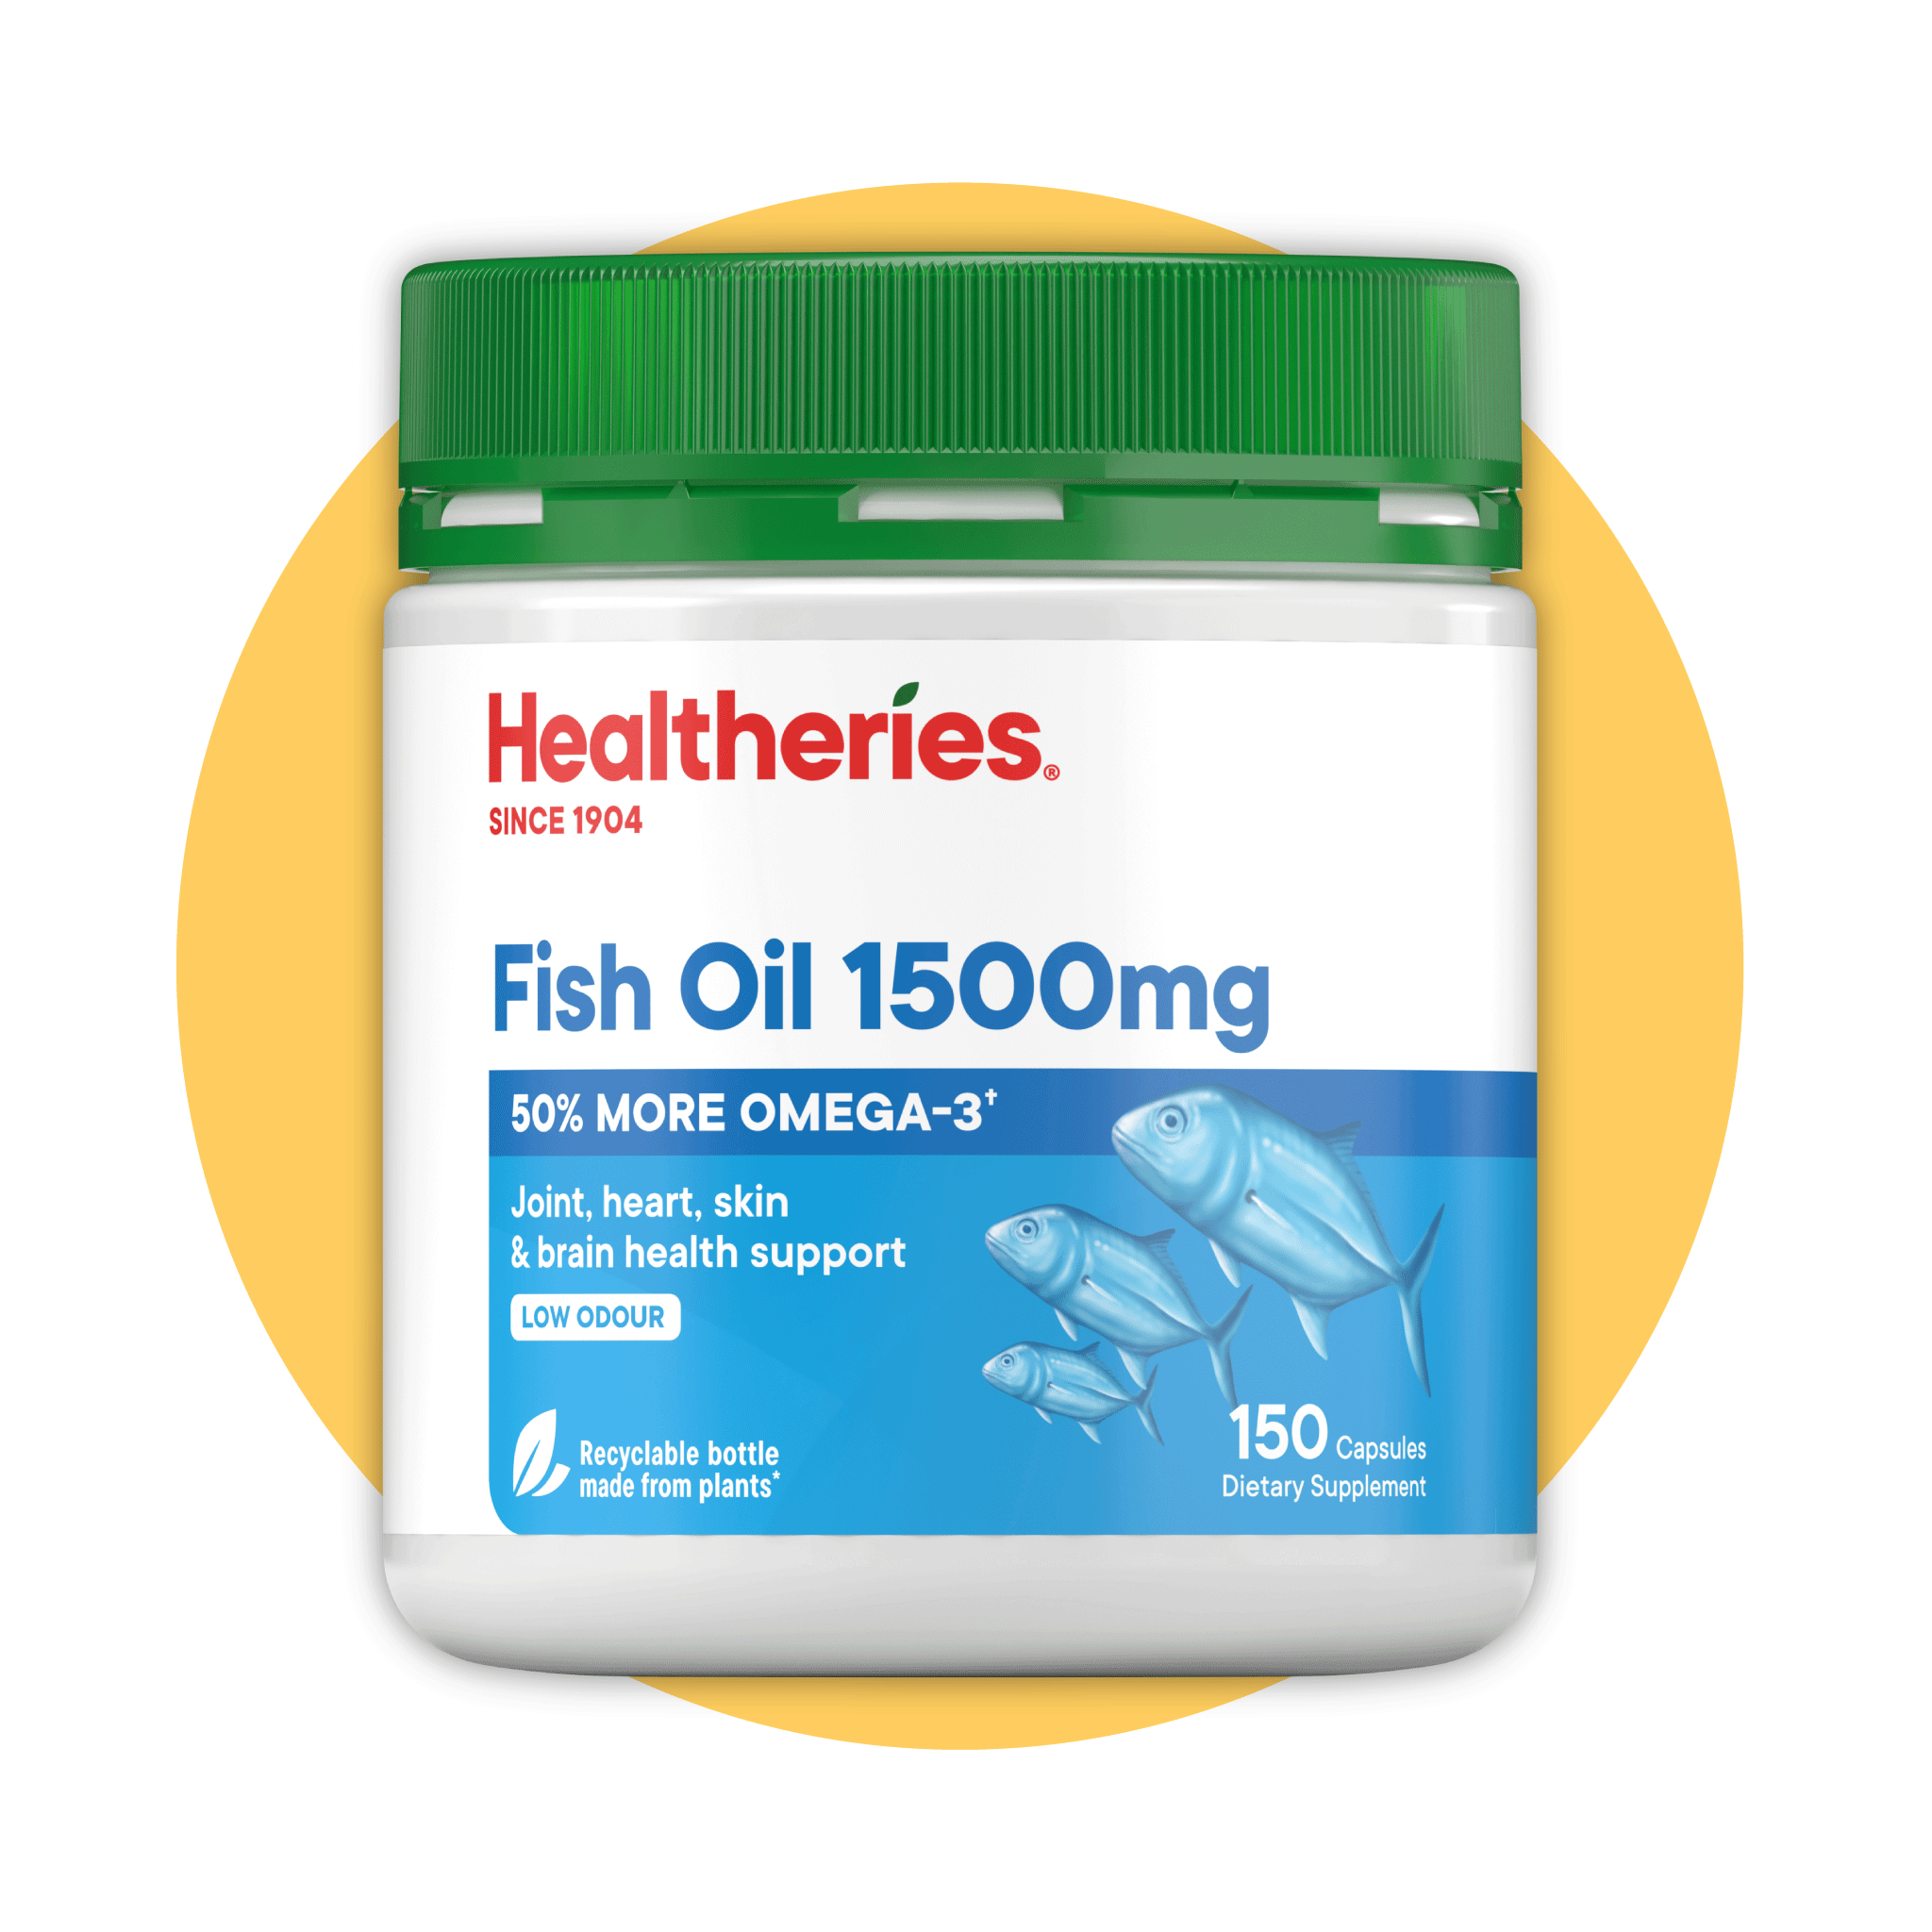 Healtheries Fish Oil 1500mg 150s - Healtheries Hong Kong